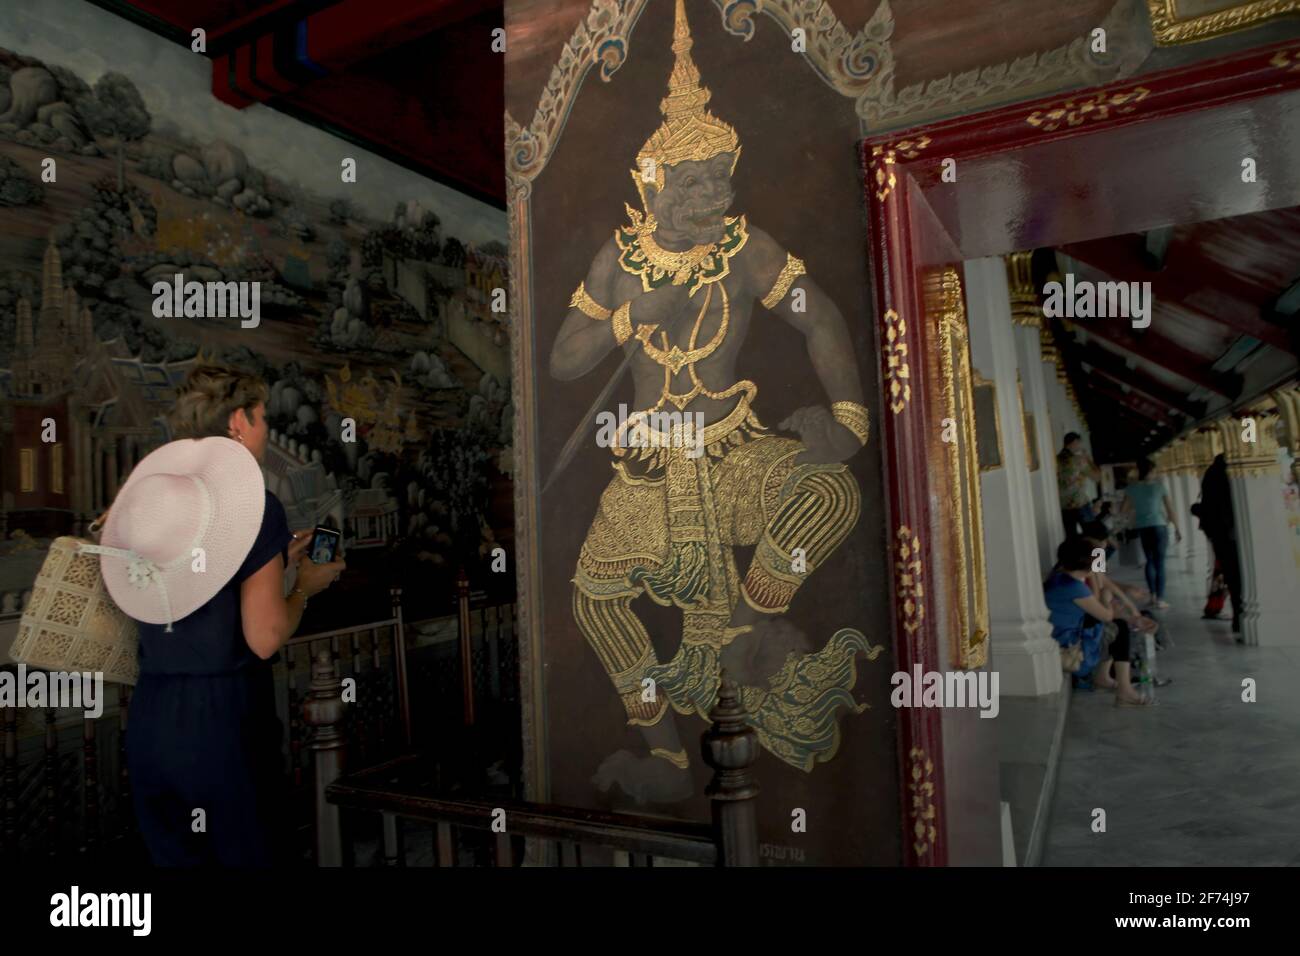 Ein Besucher, der die Gasse betreten hat, in der sich eine Galerie mit Wandgemälden, die Ramakien (thailändische Version des Ramayana-Epos) darstellen, im Wat Phra Kaew (Tempel des Smaragd-Buddha) im Grand Palace-Komplex in Bangkok, Thailand, befindet. Thailand ist das erste südostasiatische Land, das Quarantänebeschränkungen von 14 Tagen auf 10 Tage reduziert hat, um die Erholung seines Tourismussektors zu beschleunigen, so South China Morning Post am 2. April 2021. Die Entscheidung wurde getroffen, den Erholungsprozess zu beschleunigen, der zuvor von der Weltbank als „langsame Rückkehr“ prognostiziert wurde. Stockfoto